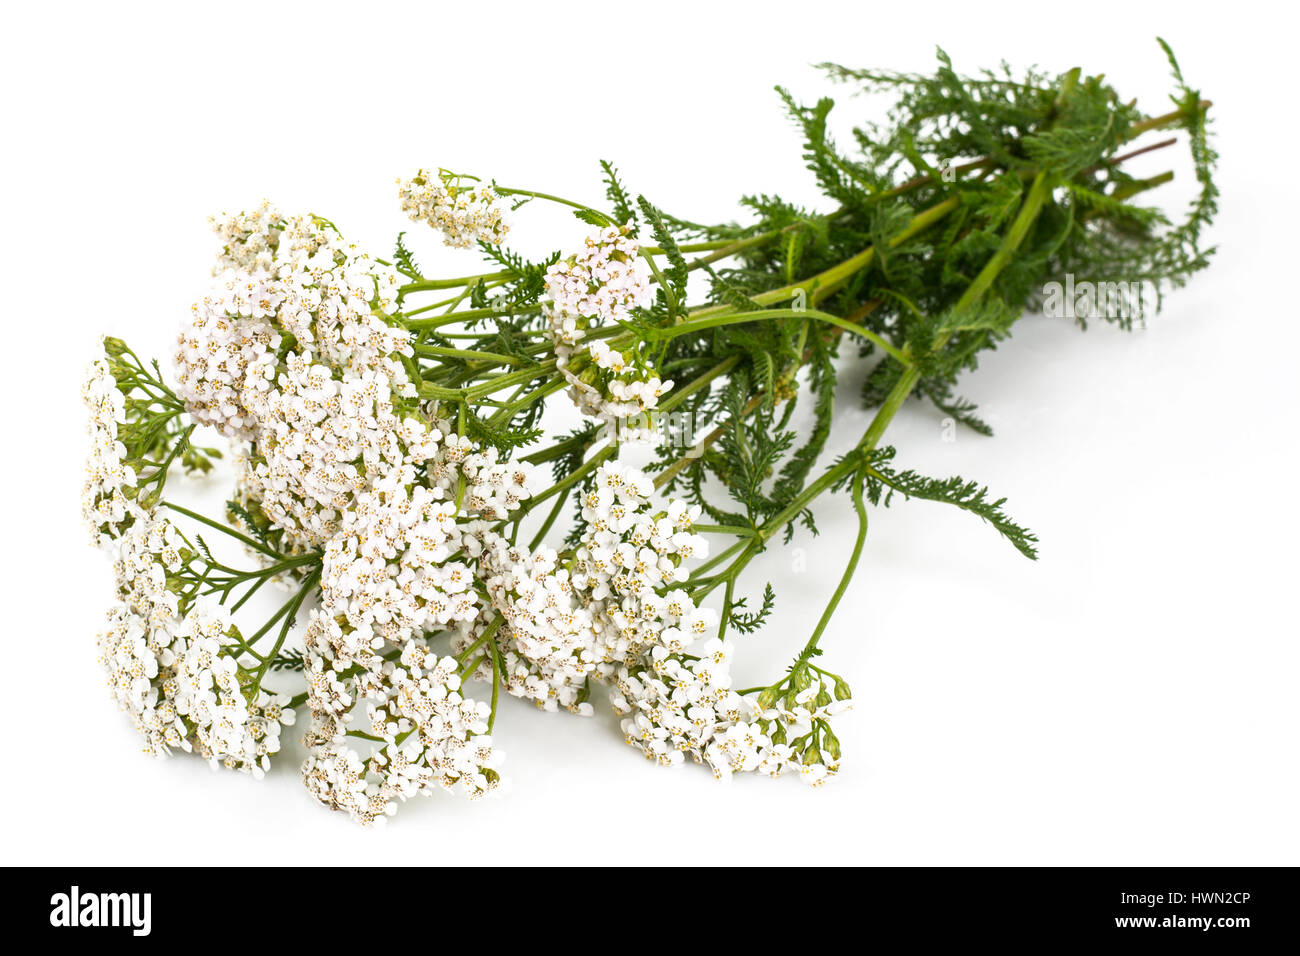 White yarrow flowers Stock Photo - Alamy